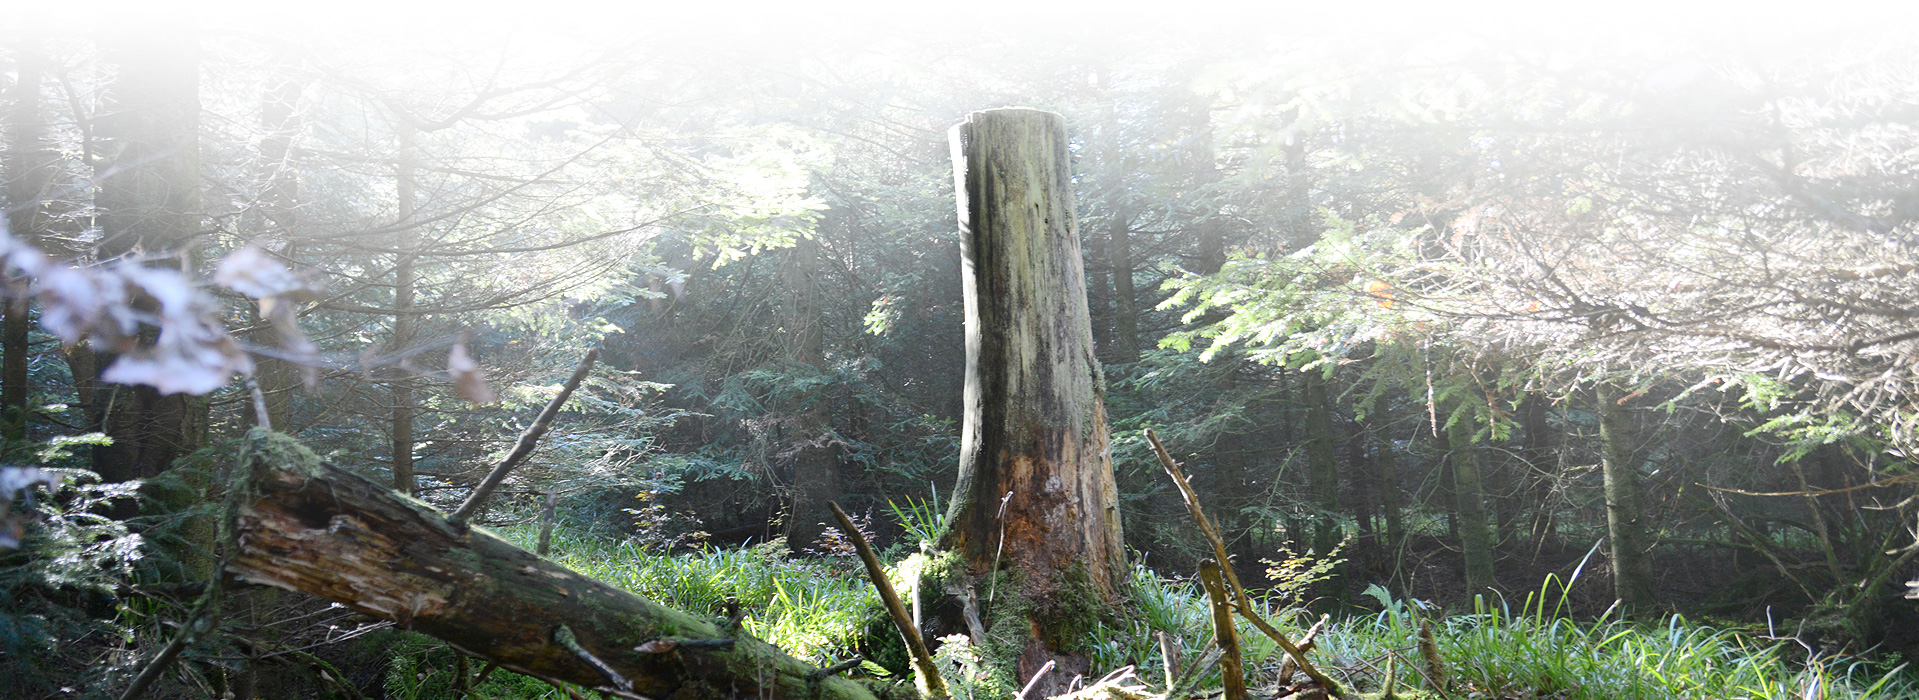 Ein in Brusthöhe gekappter Baumstumpf steht auf einer kleinen Lichtung. Im Hintergrund stehen Fichten, vor dem Baumstumpf liegt ein abgebrochener Baumstamm.